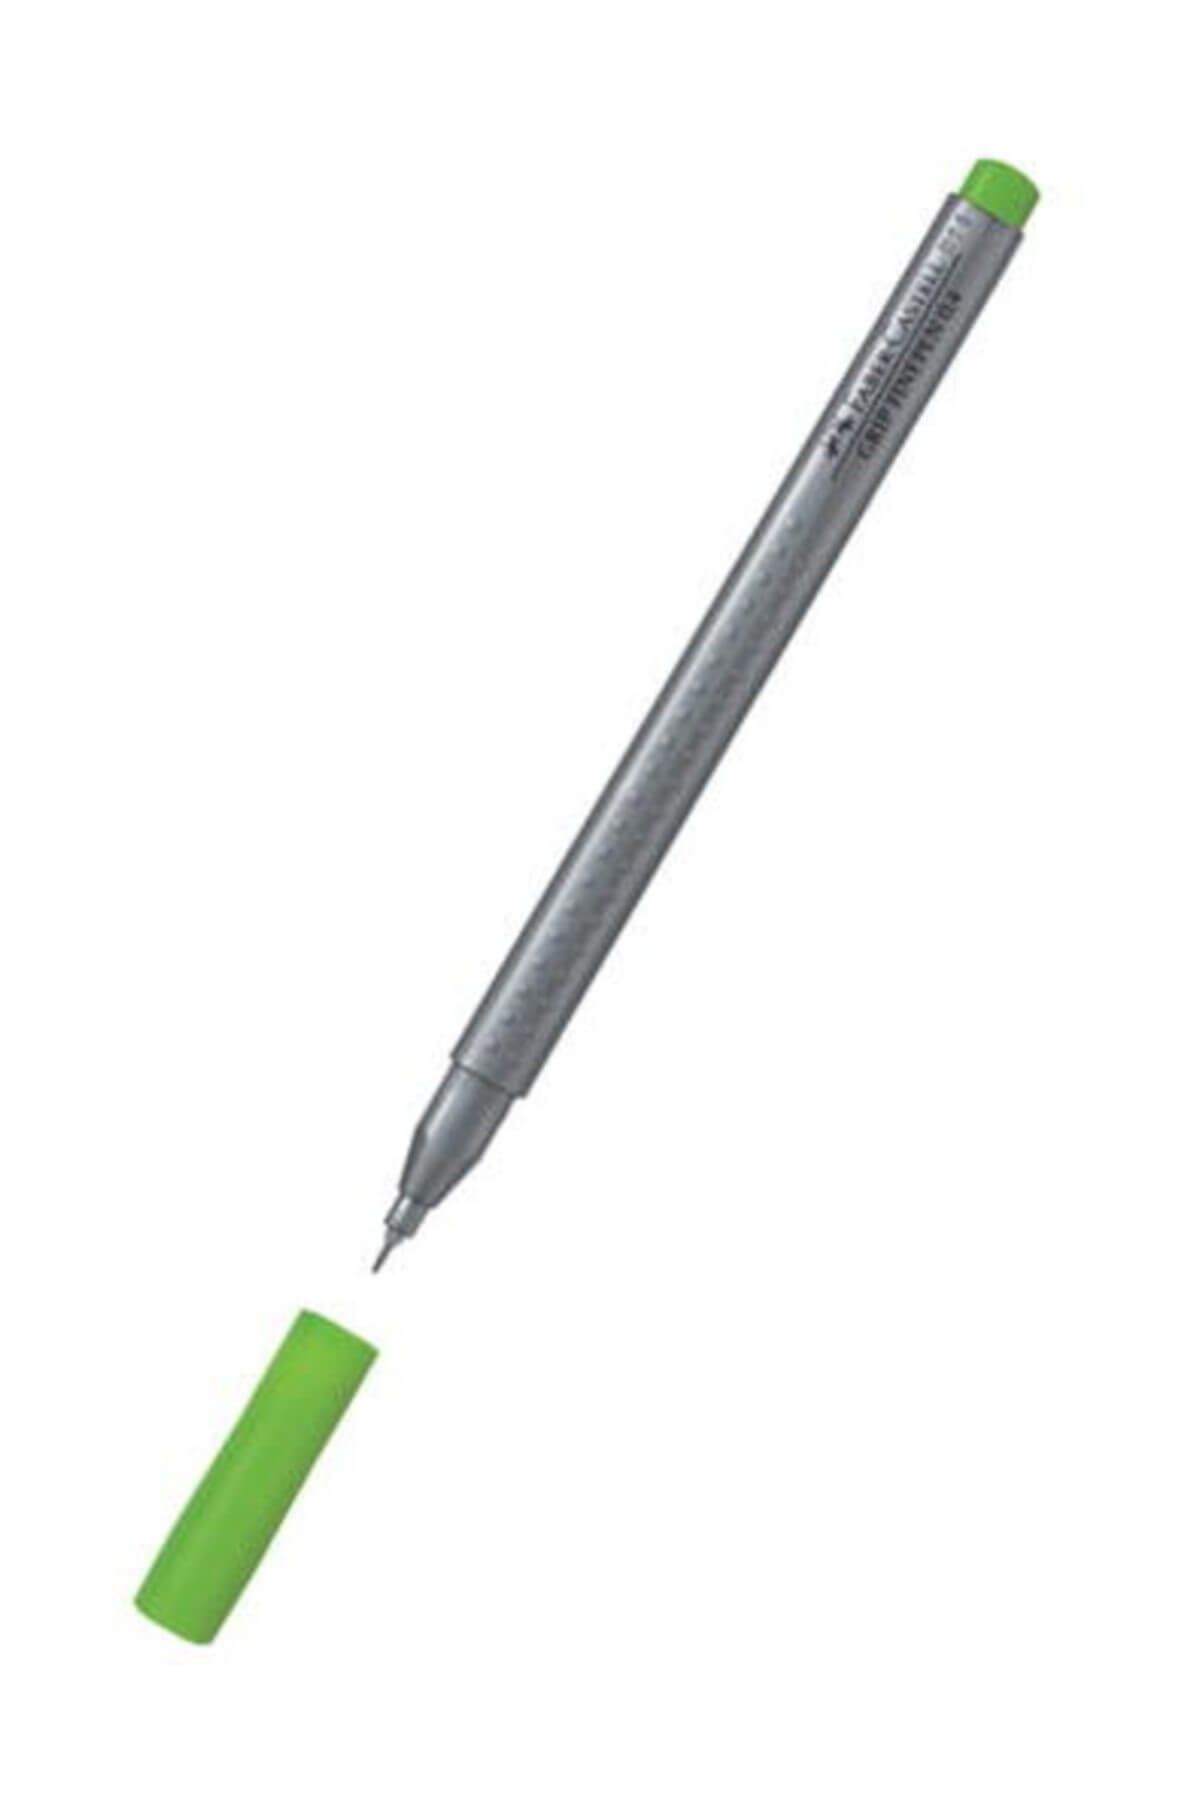 Faber Castell Grip Finepen İnce Uçlu Kalem 0.4 mm Çim Yeşili